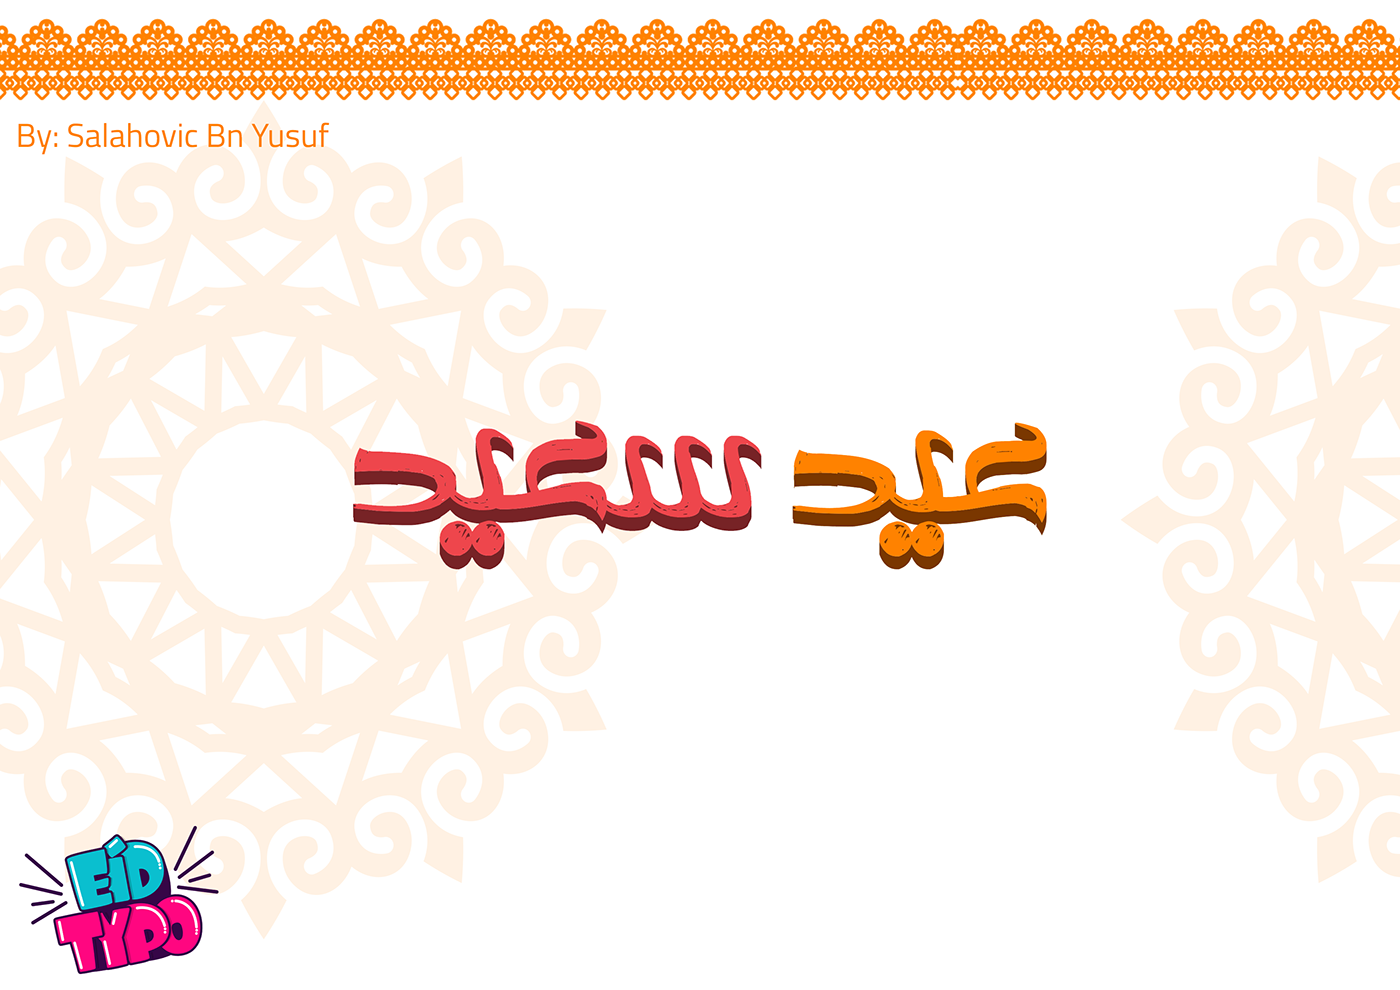 typography   Calligraphy   Eid typo